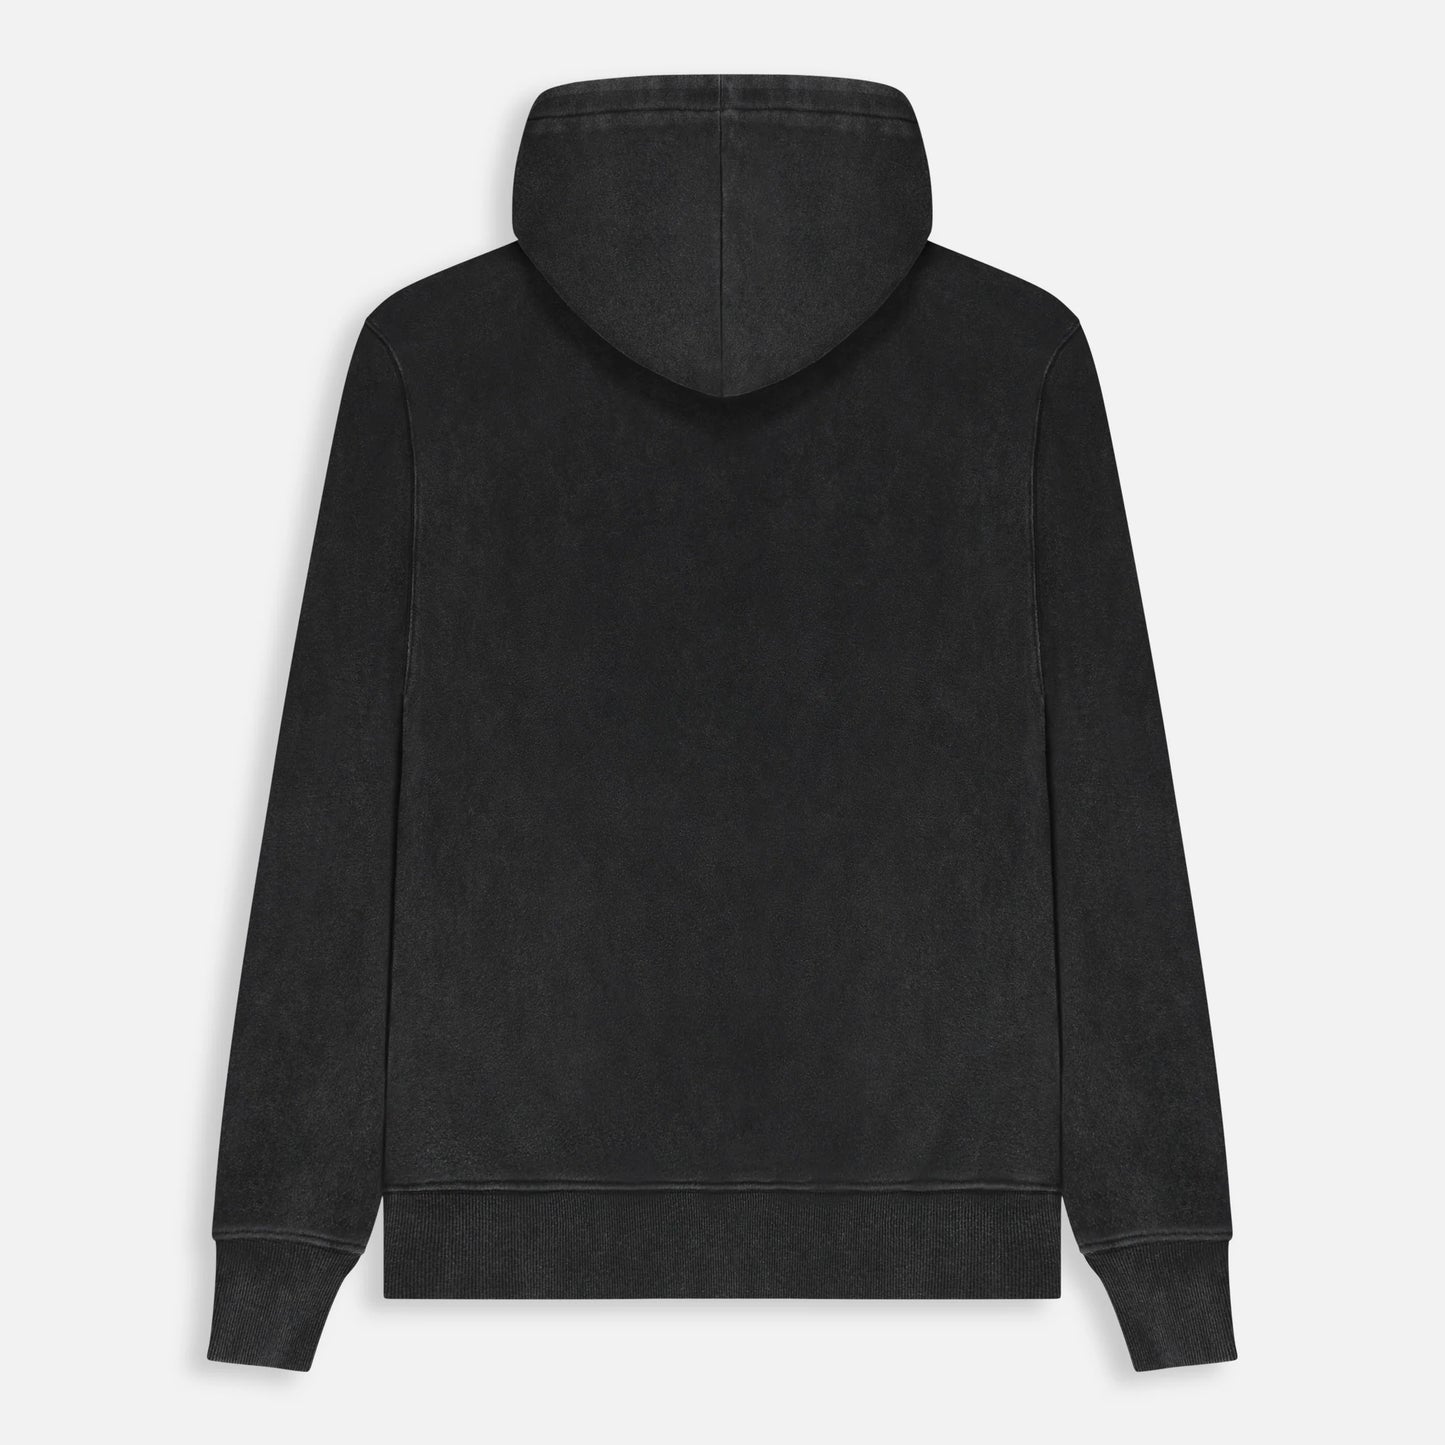 Galaxy hoodie vintage black